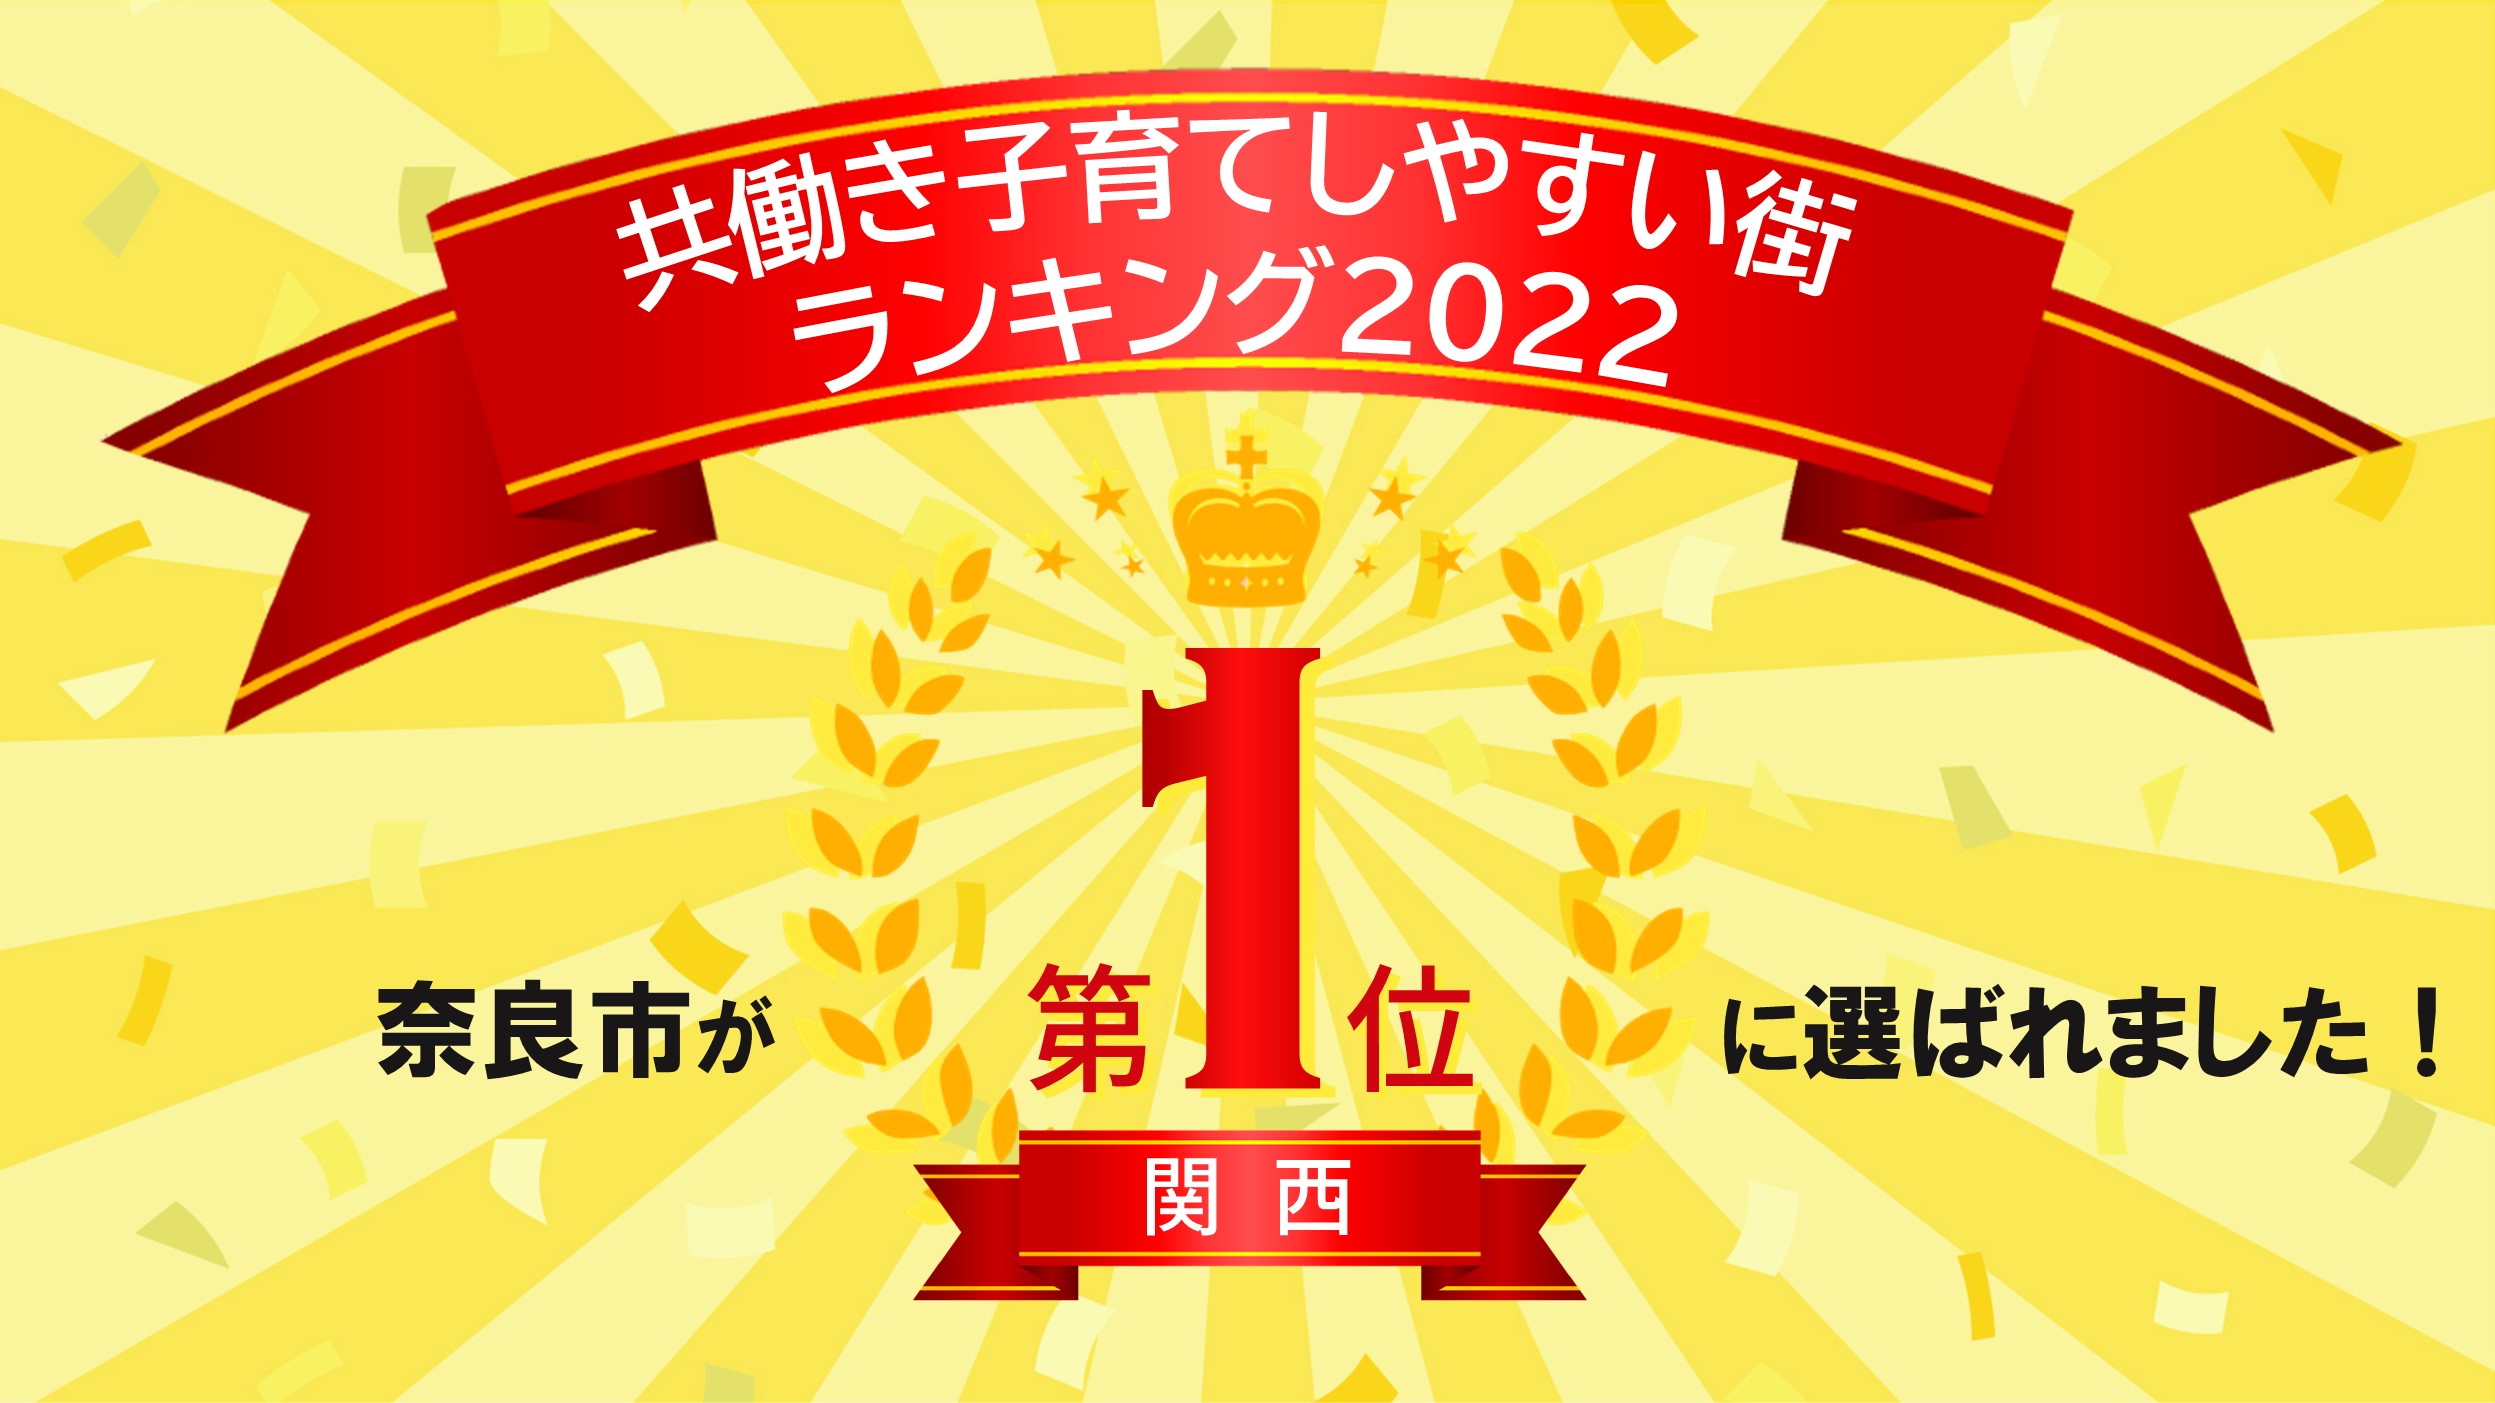 奈良市が関西1位に選ばれました